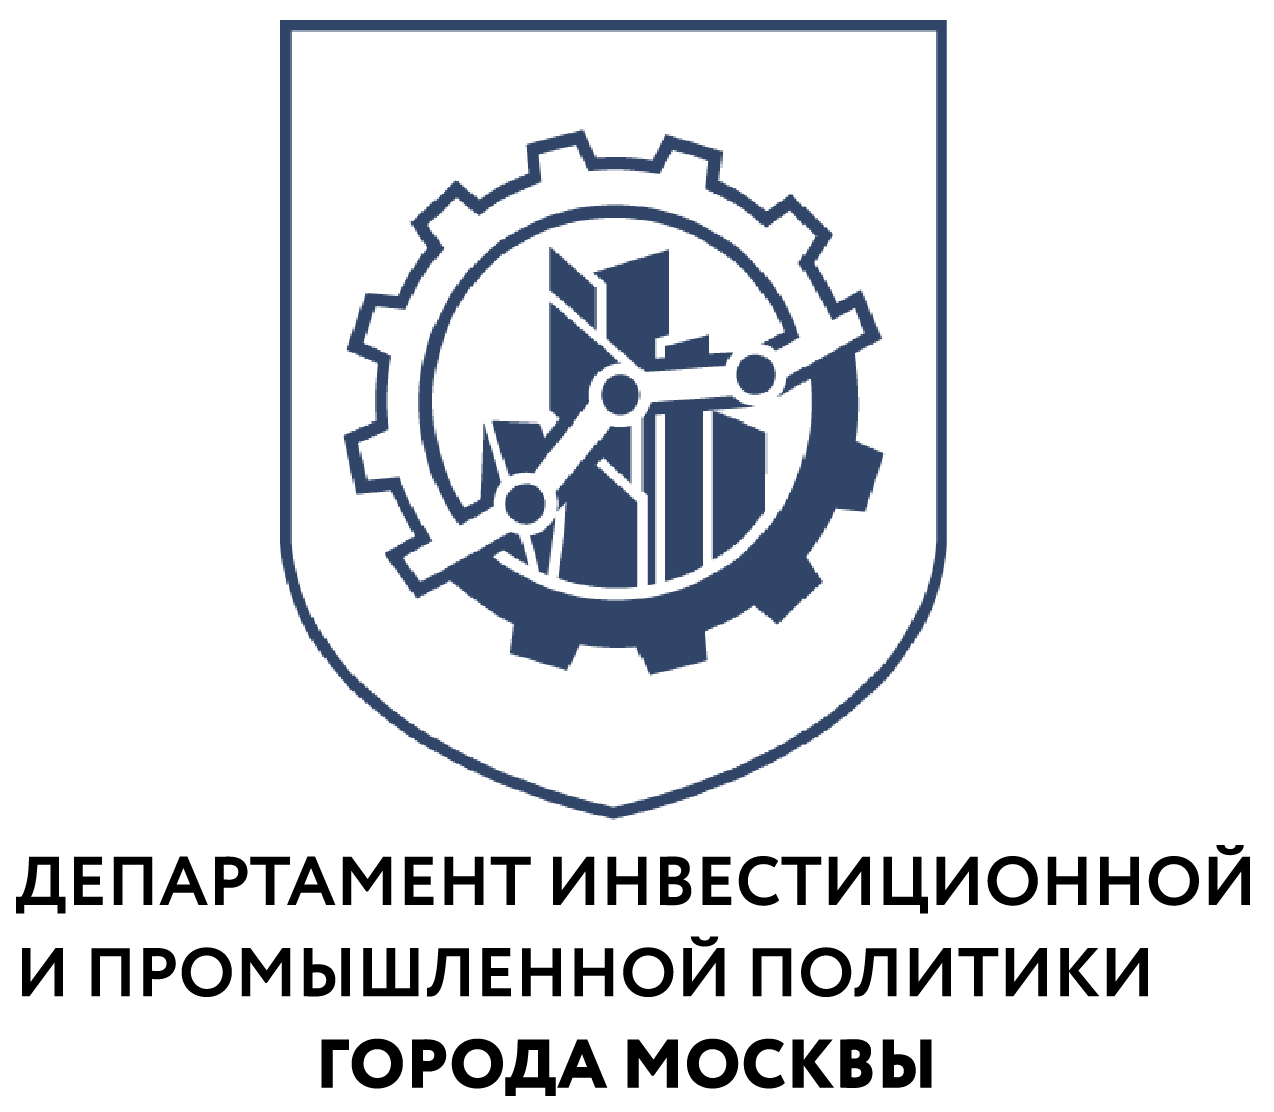 Банкоматы, газоанализаторы и ленточные пилы: как московская промышленность наращивает производство оборудования - фото 1